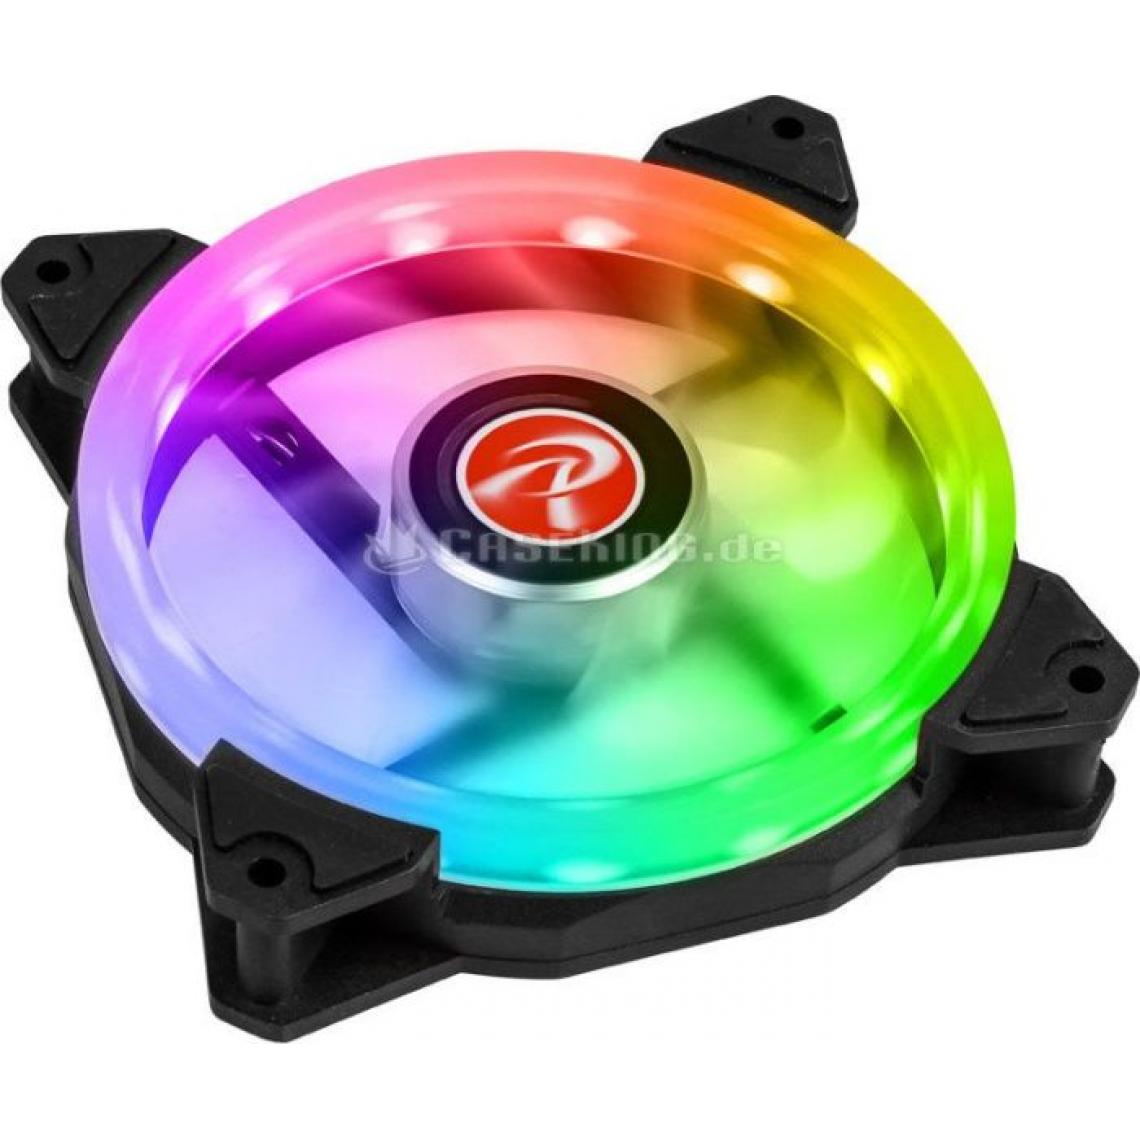 Raijintek - Raijintek IRIS arc-en-12 RGB Orcus ventilateur LED PWM - 120mm - Ventilateur Pour Boîtier